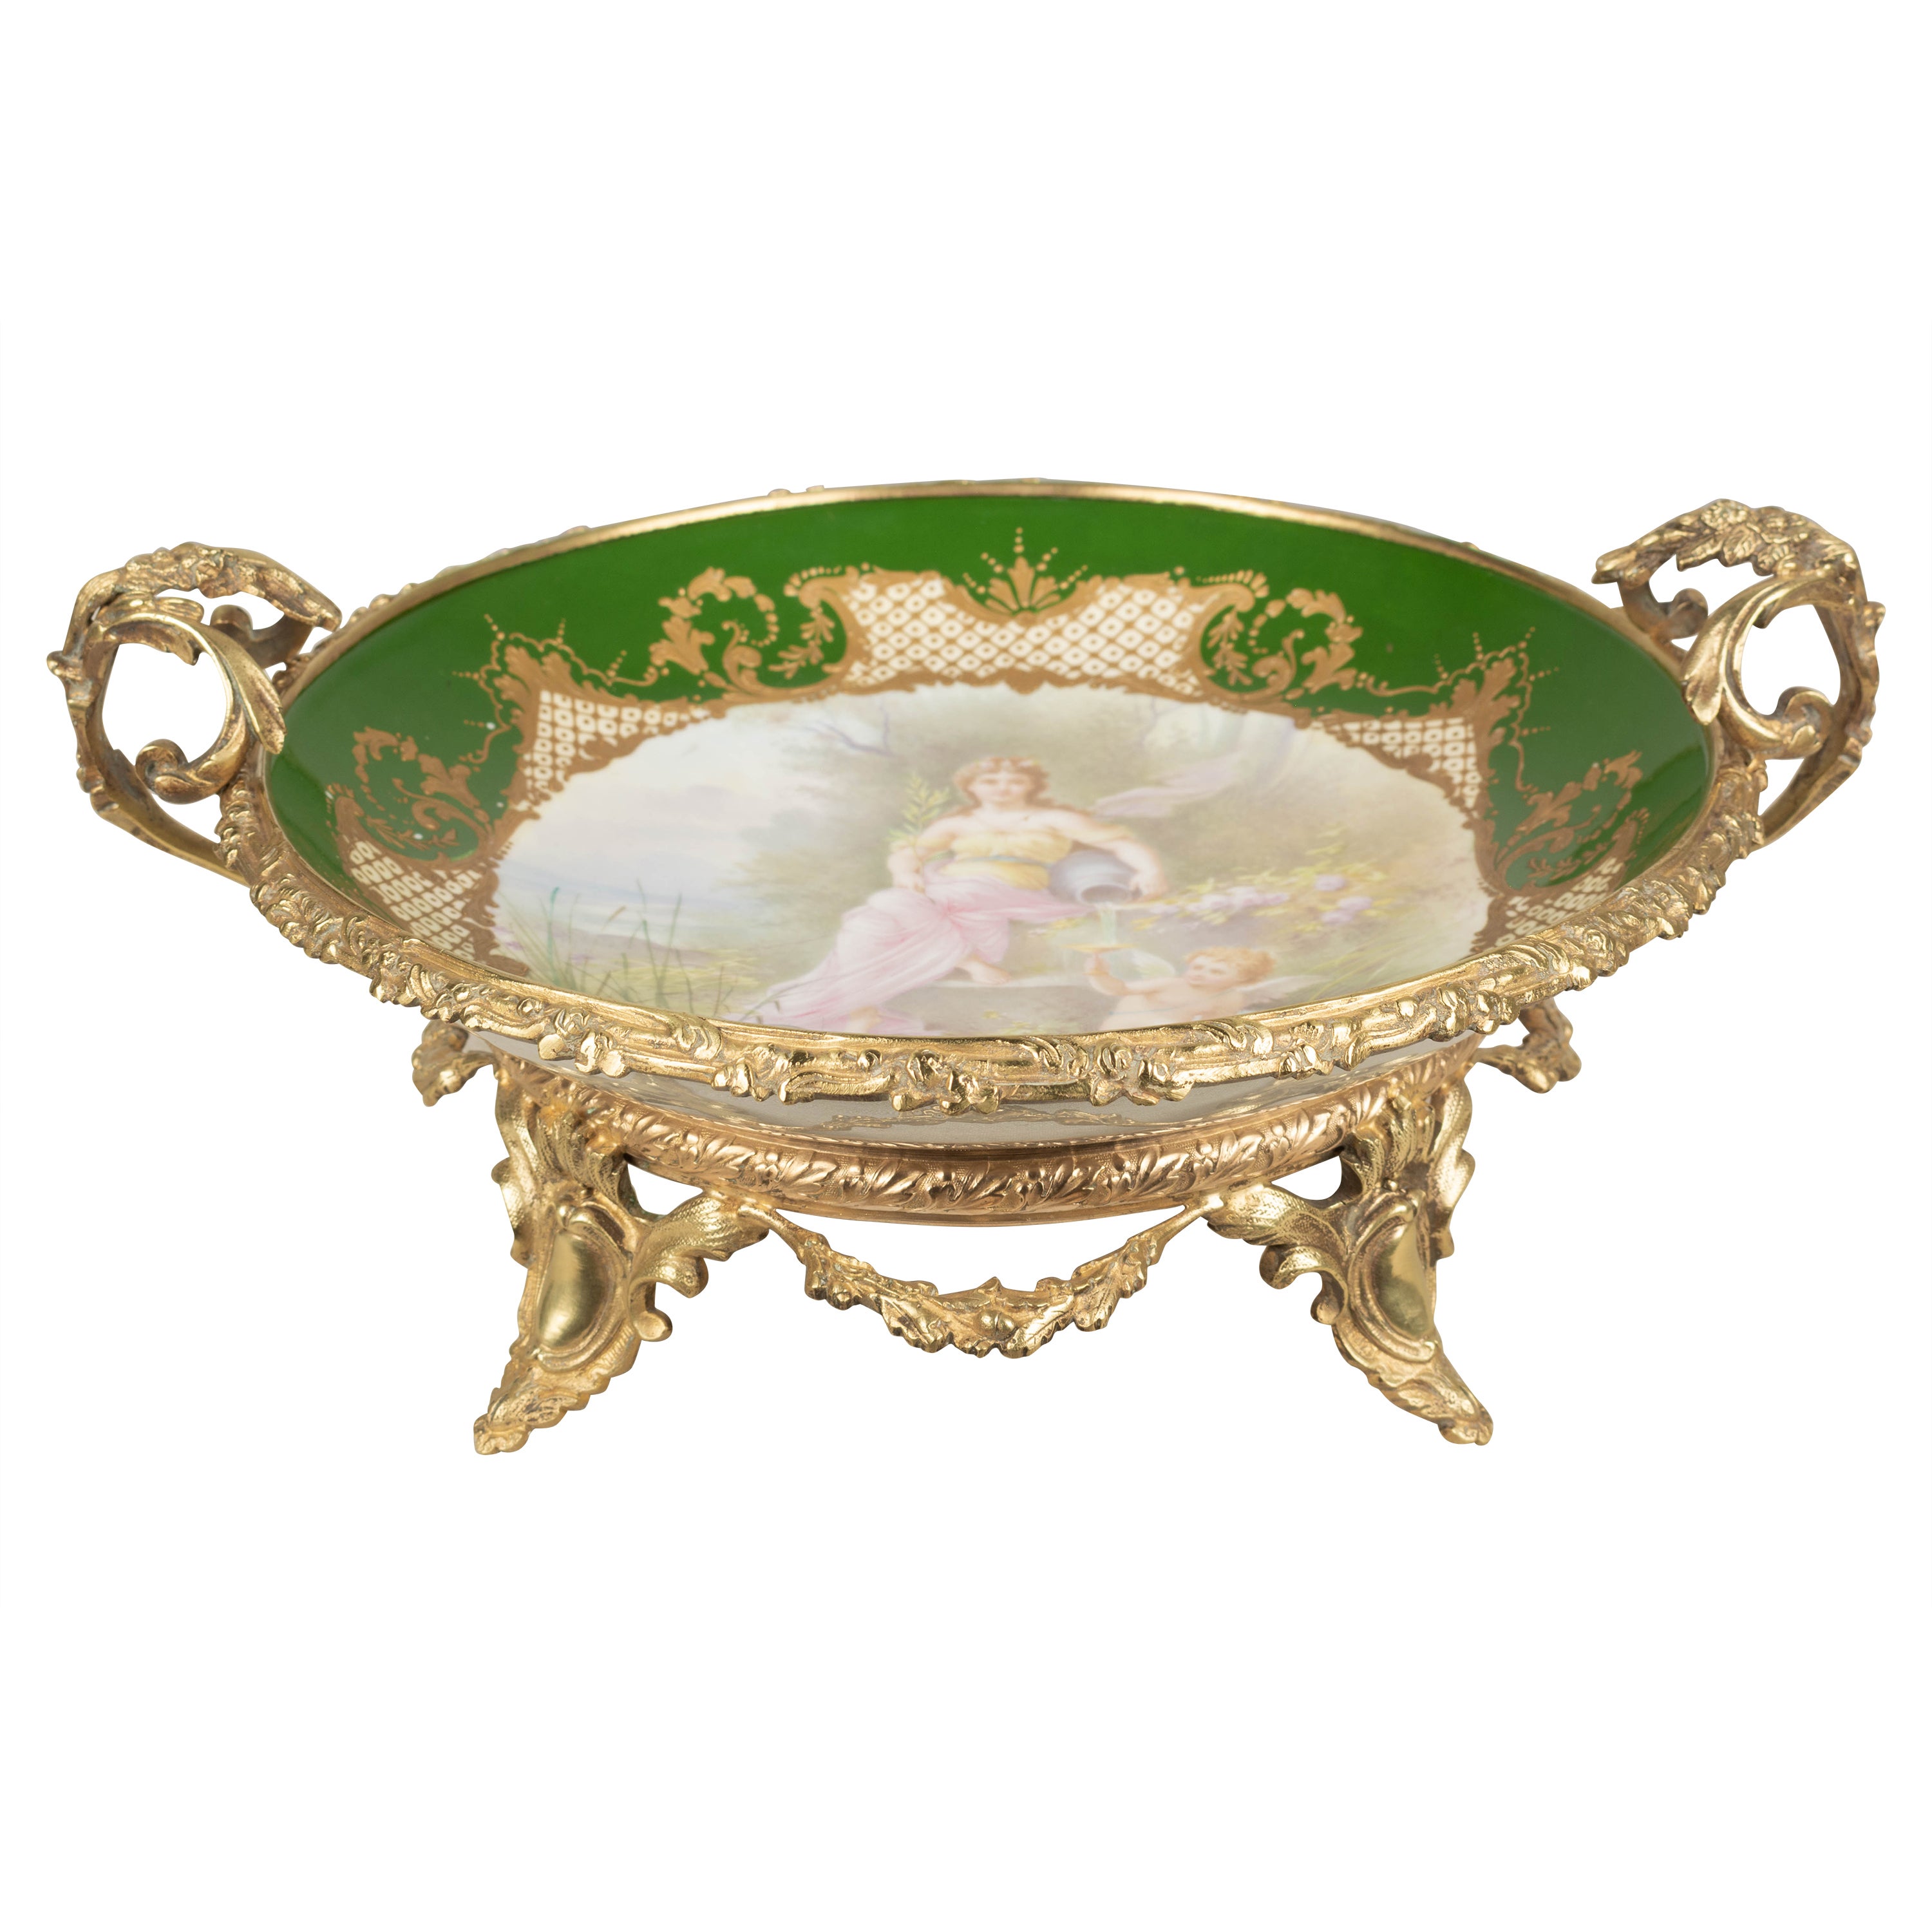 19th Century French Ormolu Sèvres Porcelain Centerpiece Bowl